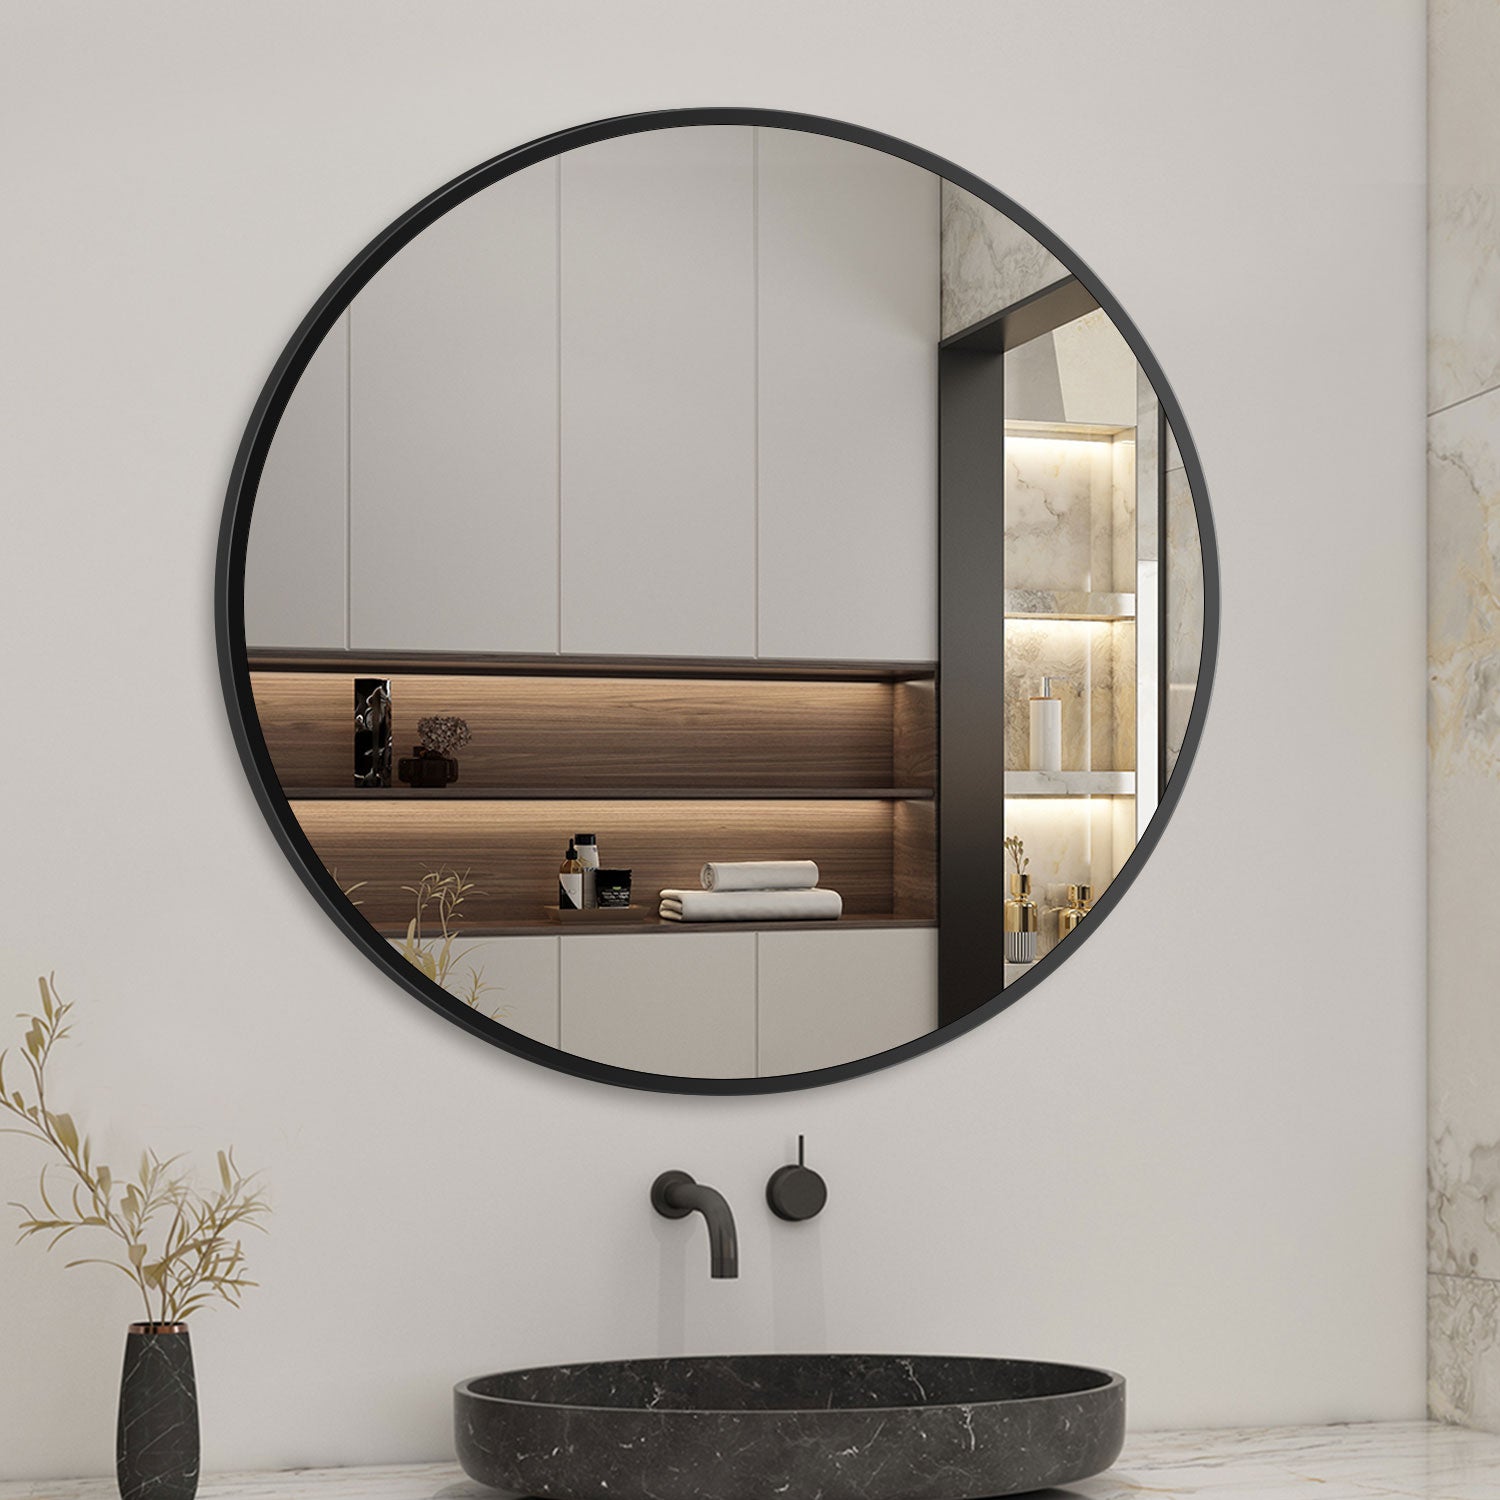 Aica Miroir Mural de Salle de Bain Rond doré et noir 50/60/70/80cm, cadre en aluminium miroir pour Salle de Bain + Salon + WC -Livraison gratuite